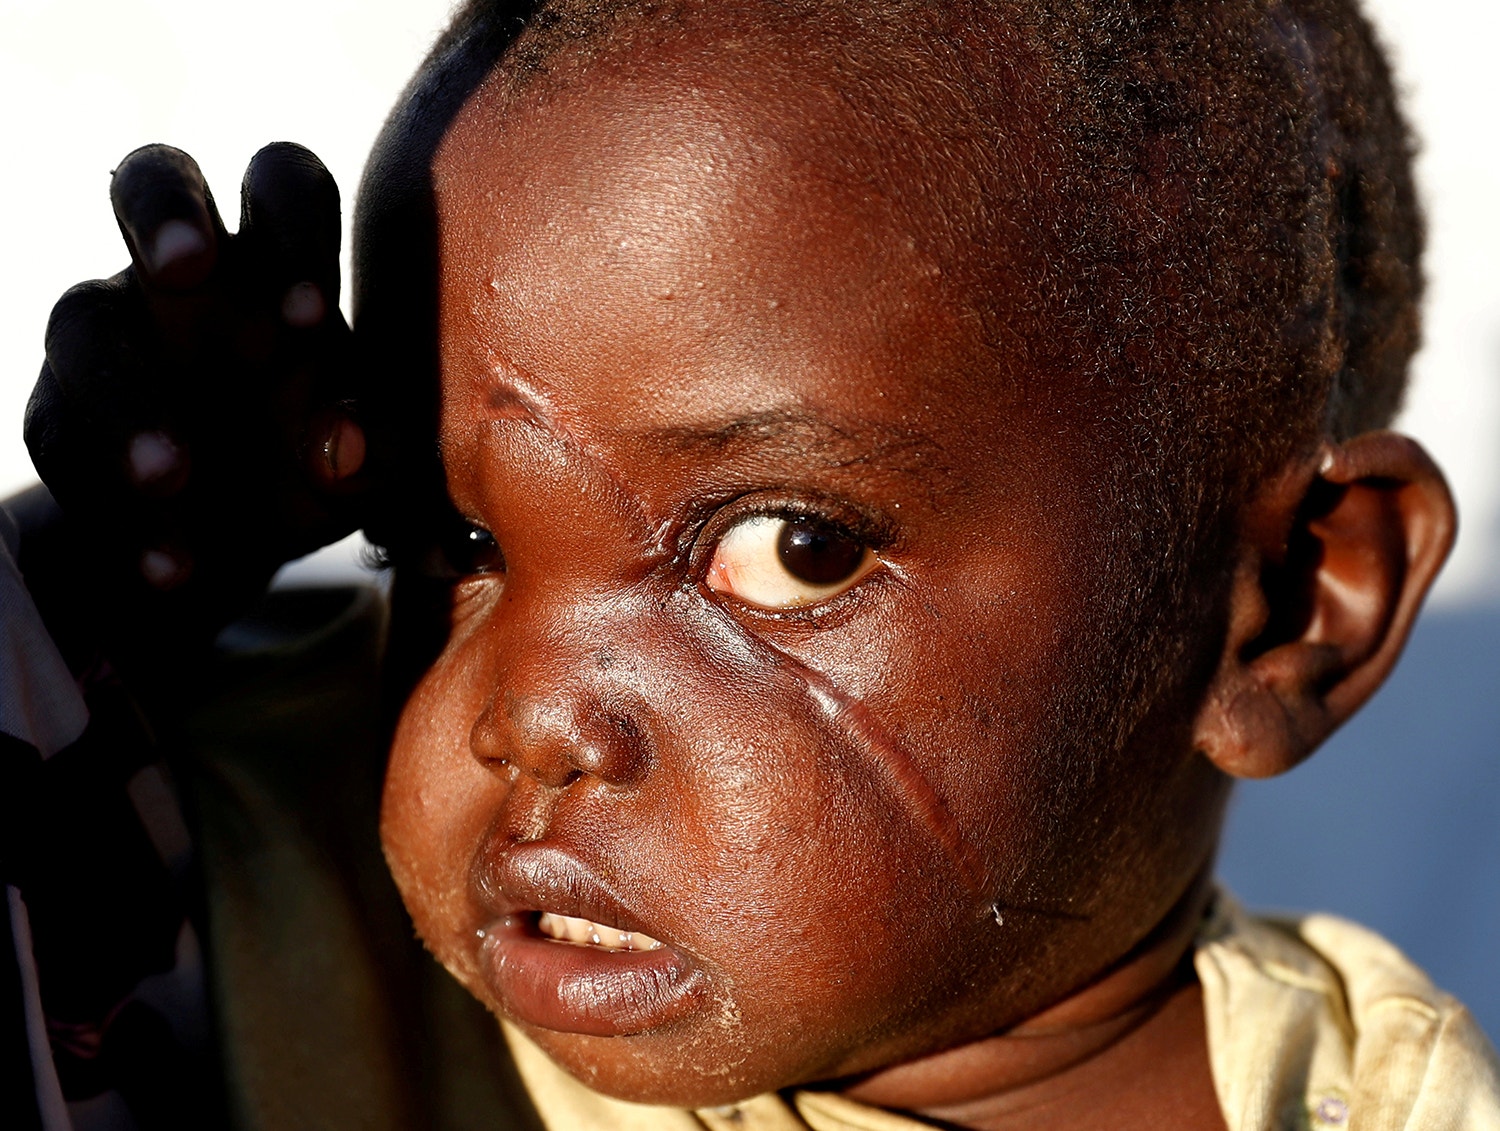  Rachele-Ngabausi de 2 anos ficou ferido devido a um ataque de mil&iacute;cias &agrave; sua aldeia em Bunia na Rep. Democr&aacute;tica do Congo /Goran Tomasevic - Reuters 